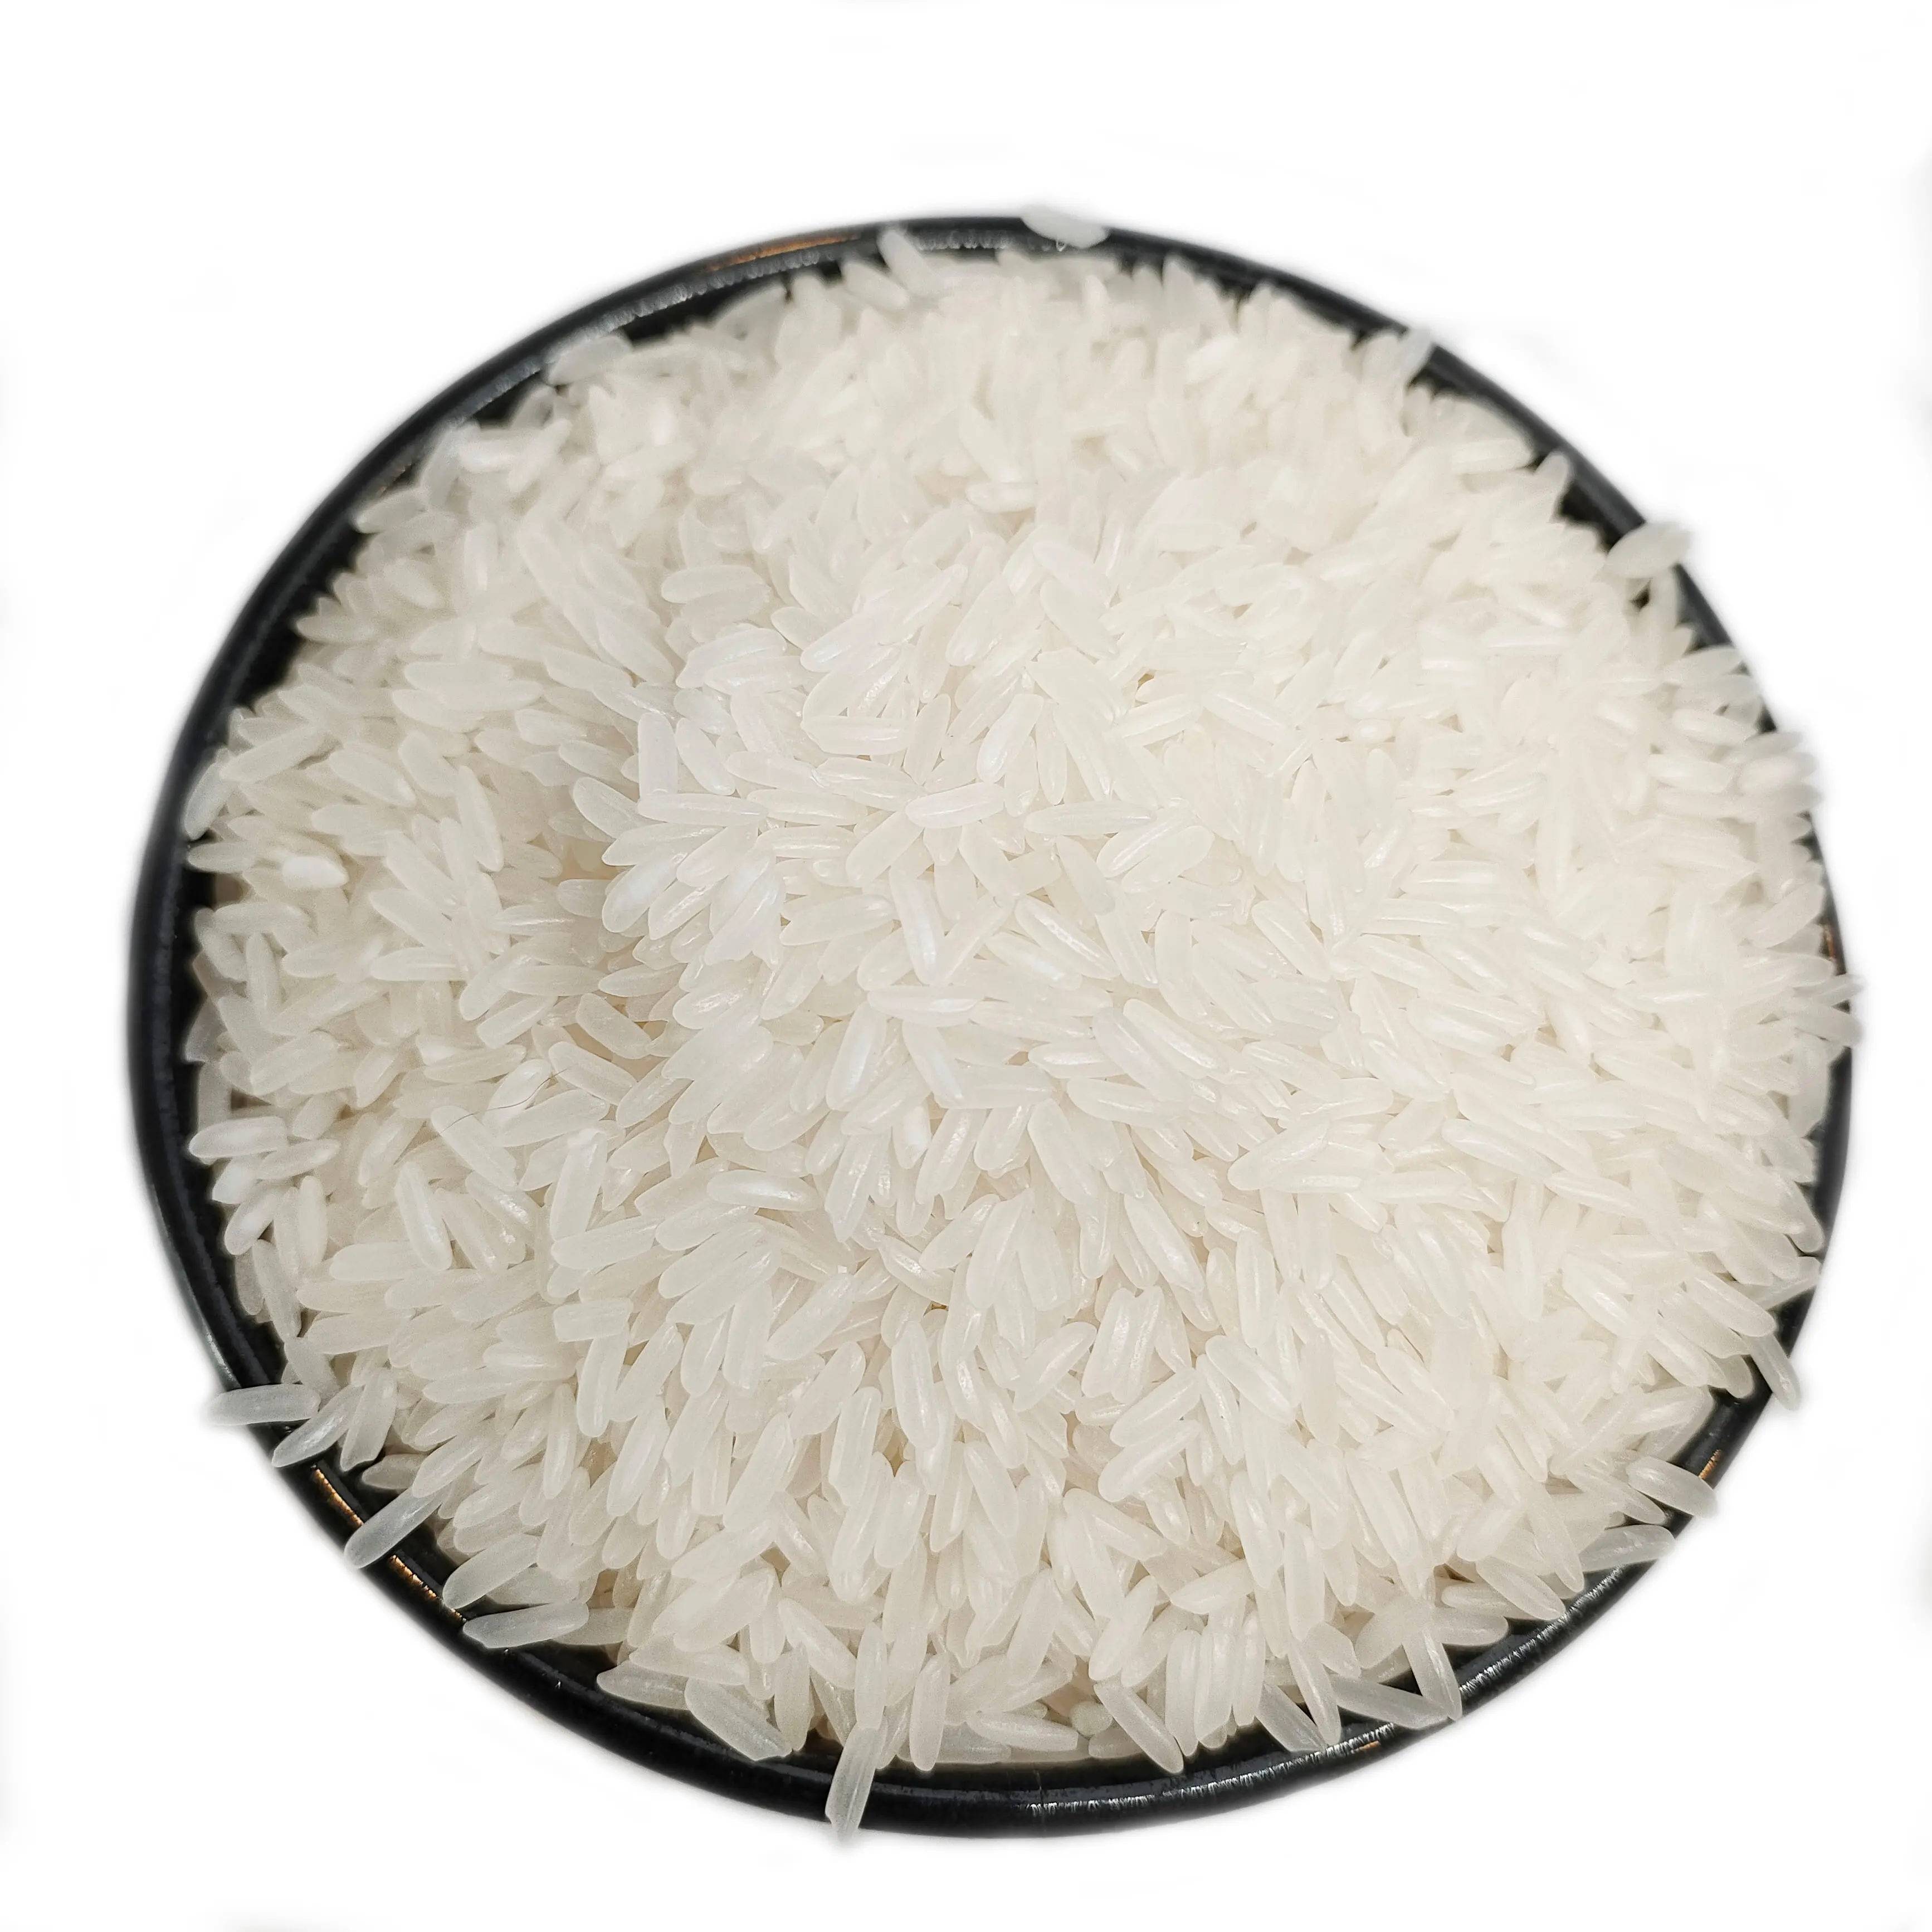 最高の販売価格-ジャスミン米の香り100% プレミアム品質50kg、25kg工場からの長粒白米の新しいバッグパッキング